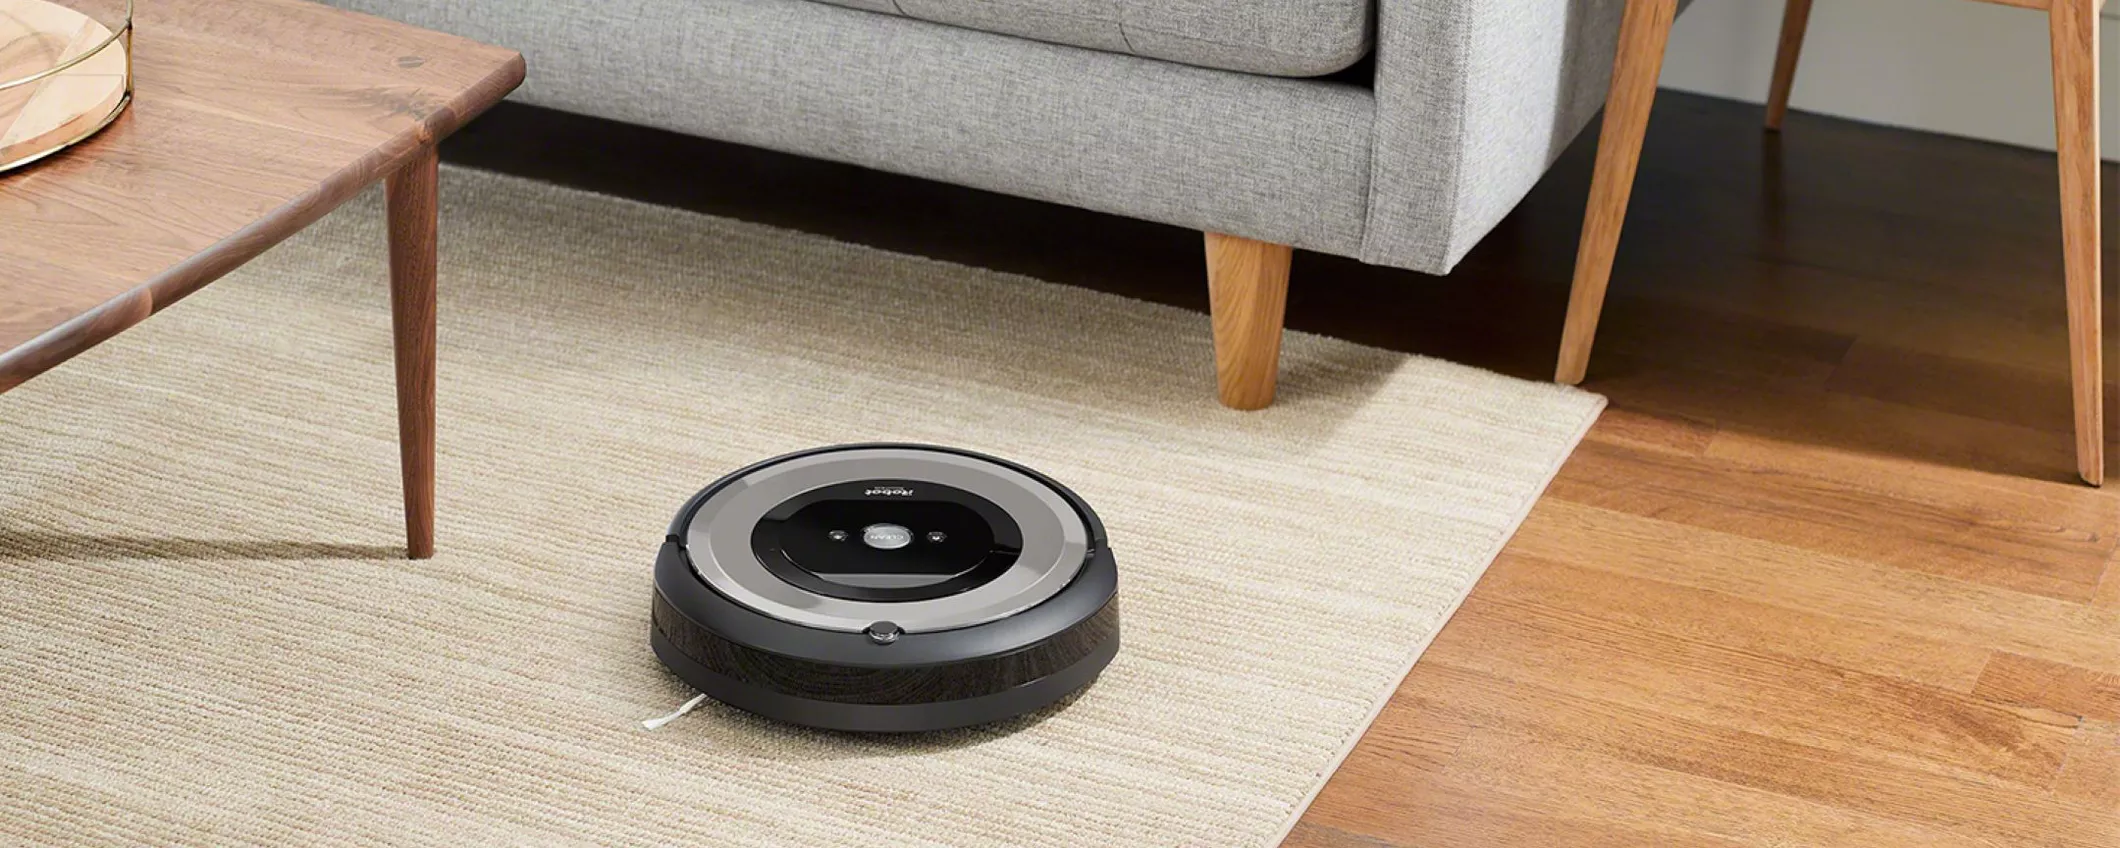 iRobot Roomba e5154 al prezzo più basso di sempre su Amazon (199€)